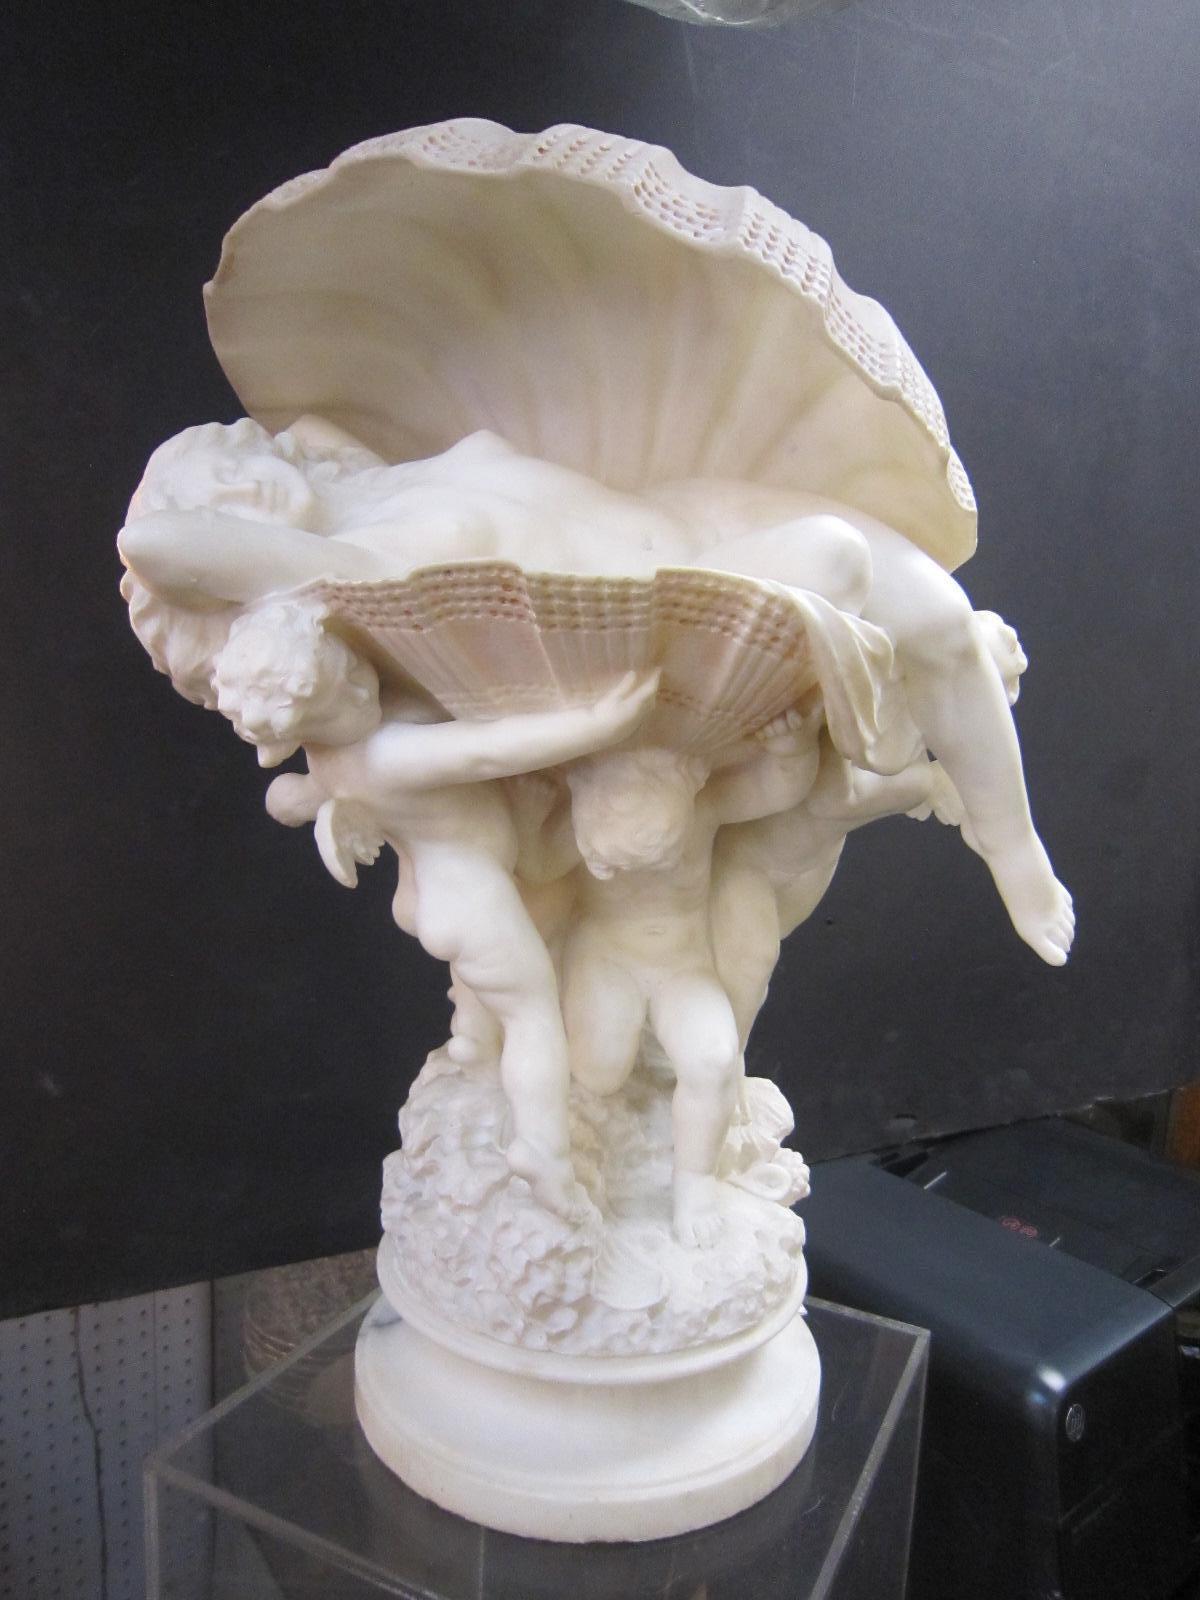 Sculpture en albâtre blanc, sculptée à la main, représentant une femme nue allongée dans une coquille de palourde, avec trois putti ailés la portant.
dans les eaux chargées de coquillages.
Signé au verso par l'artiste italien du 19e-20e siècle, le